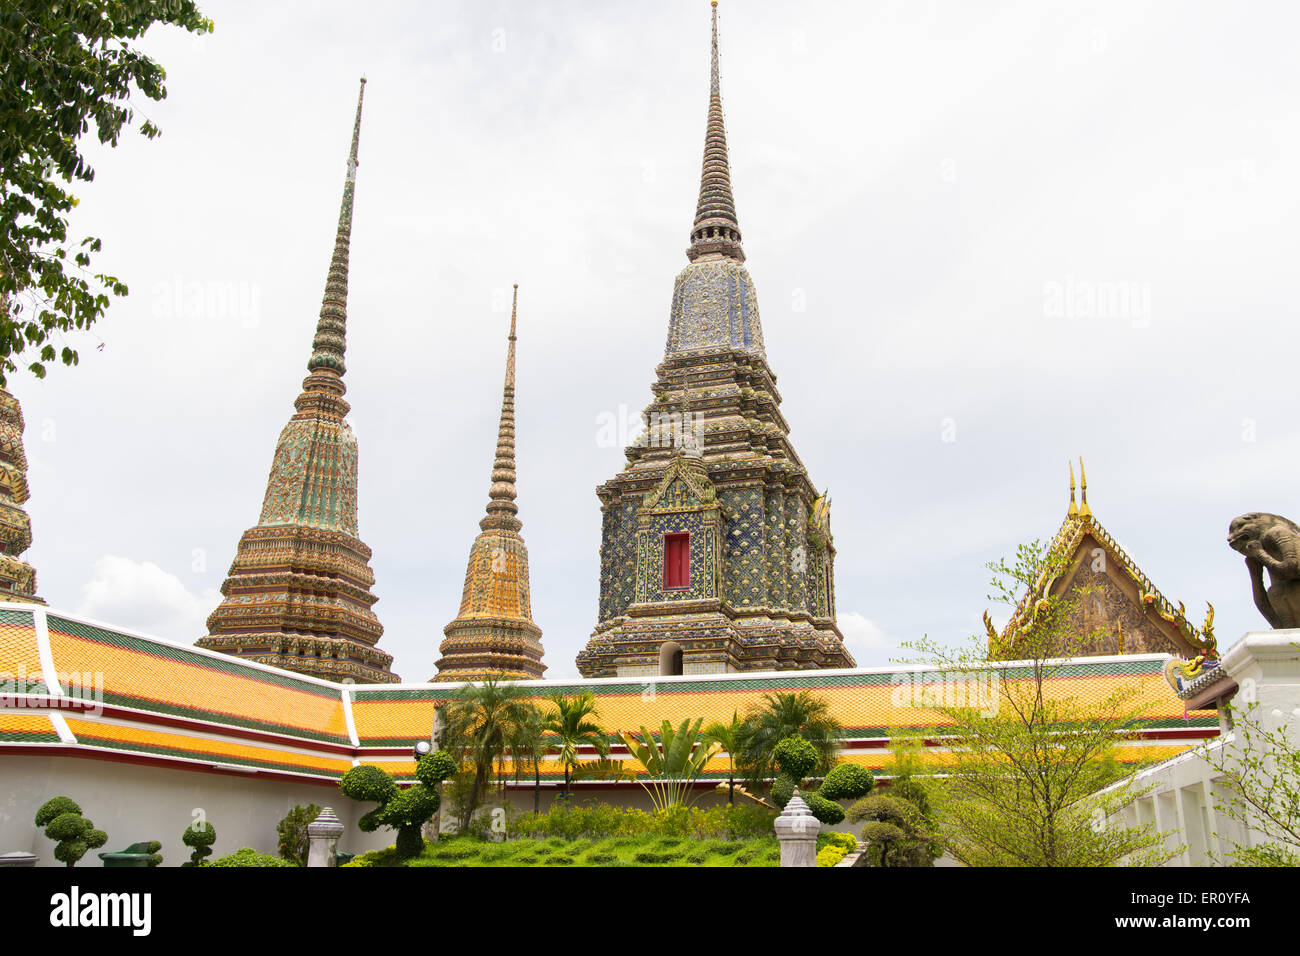 Chedis in Wat Pho temple, Bangkok, Thailand Stock Photo